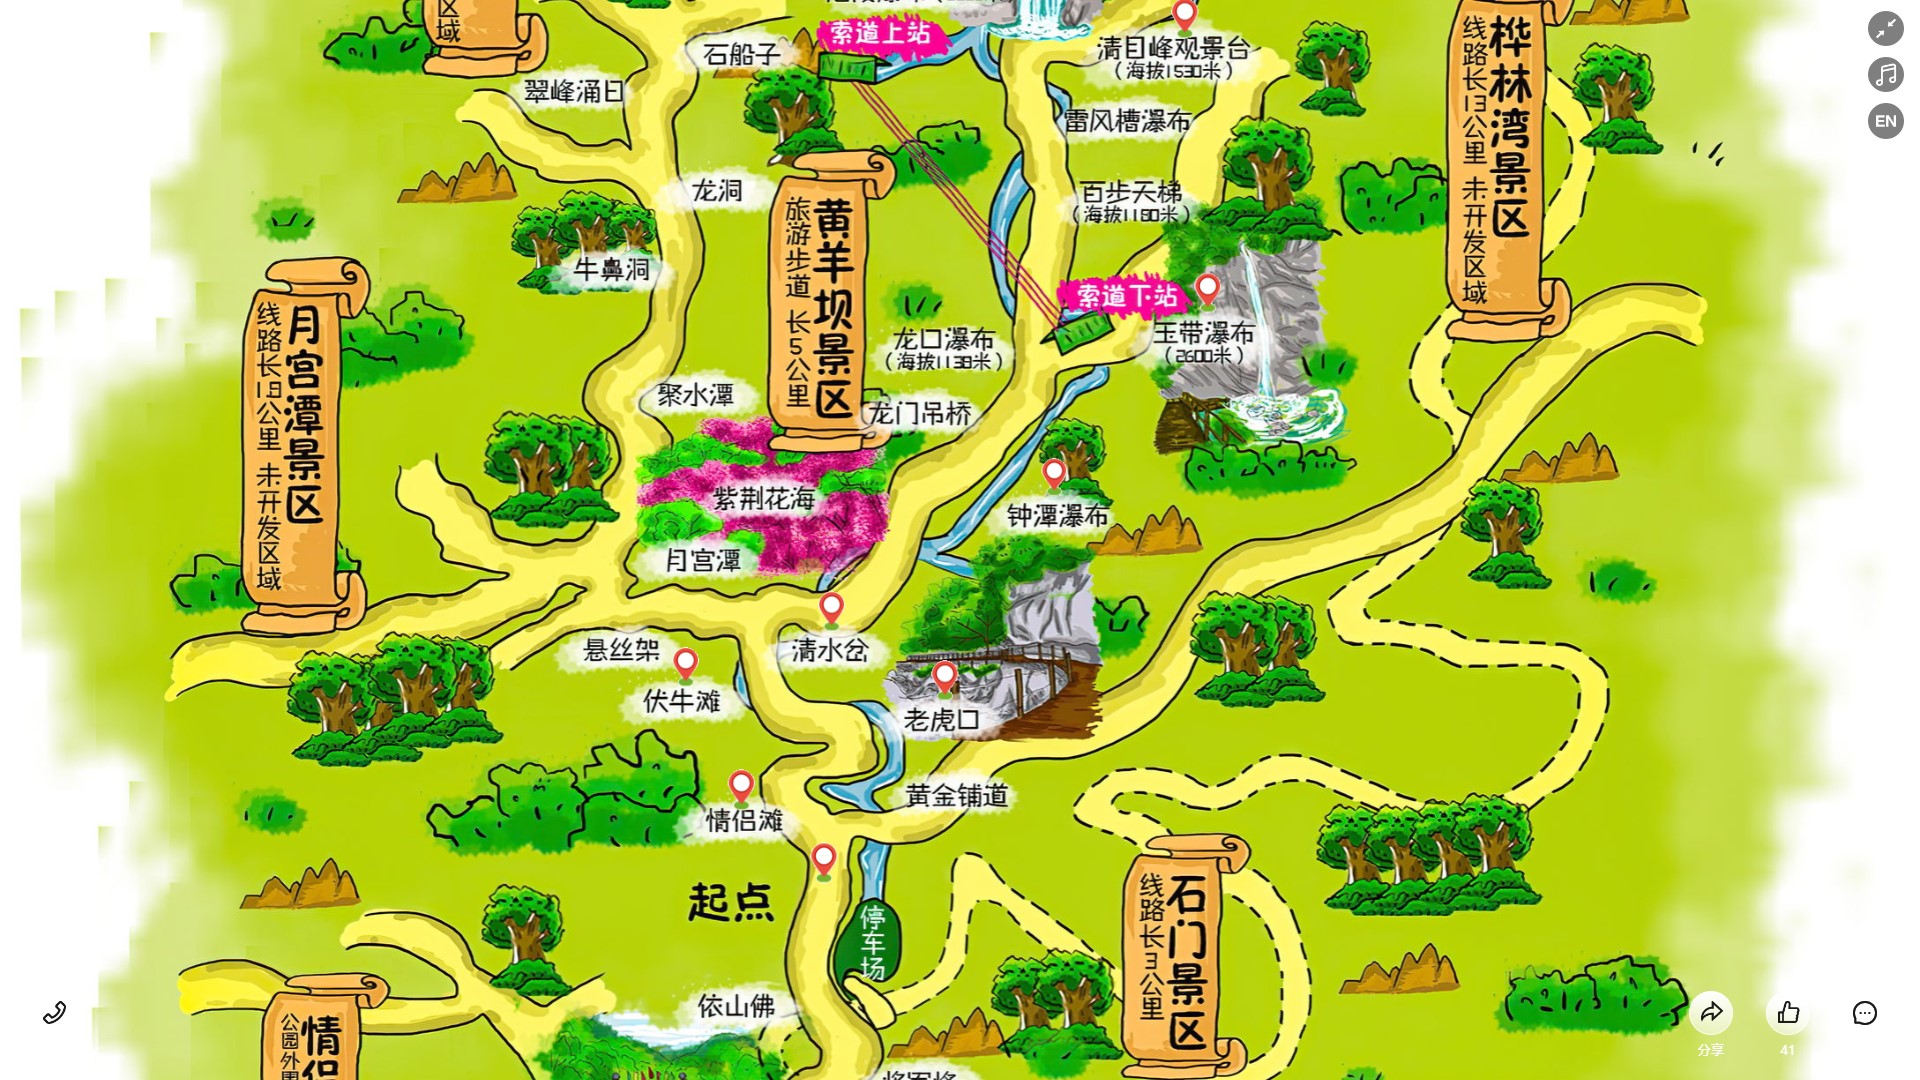 松山湖管委会陕西太平
森林公园